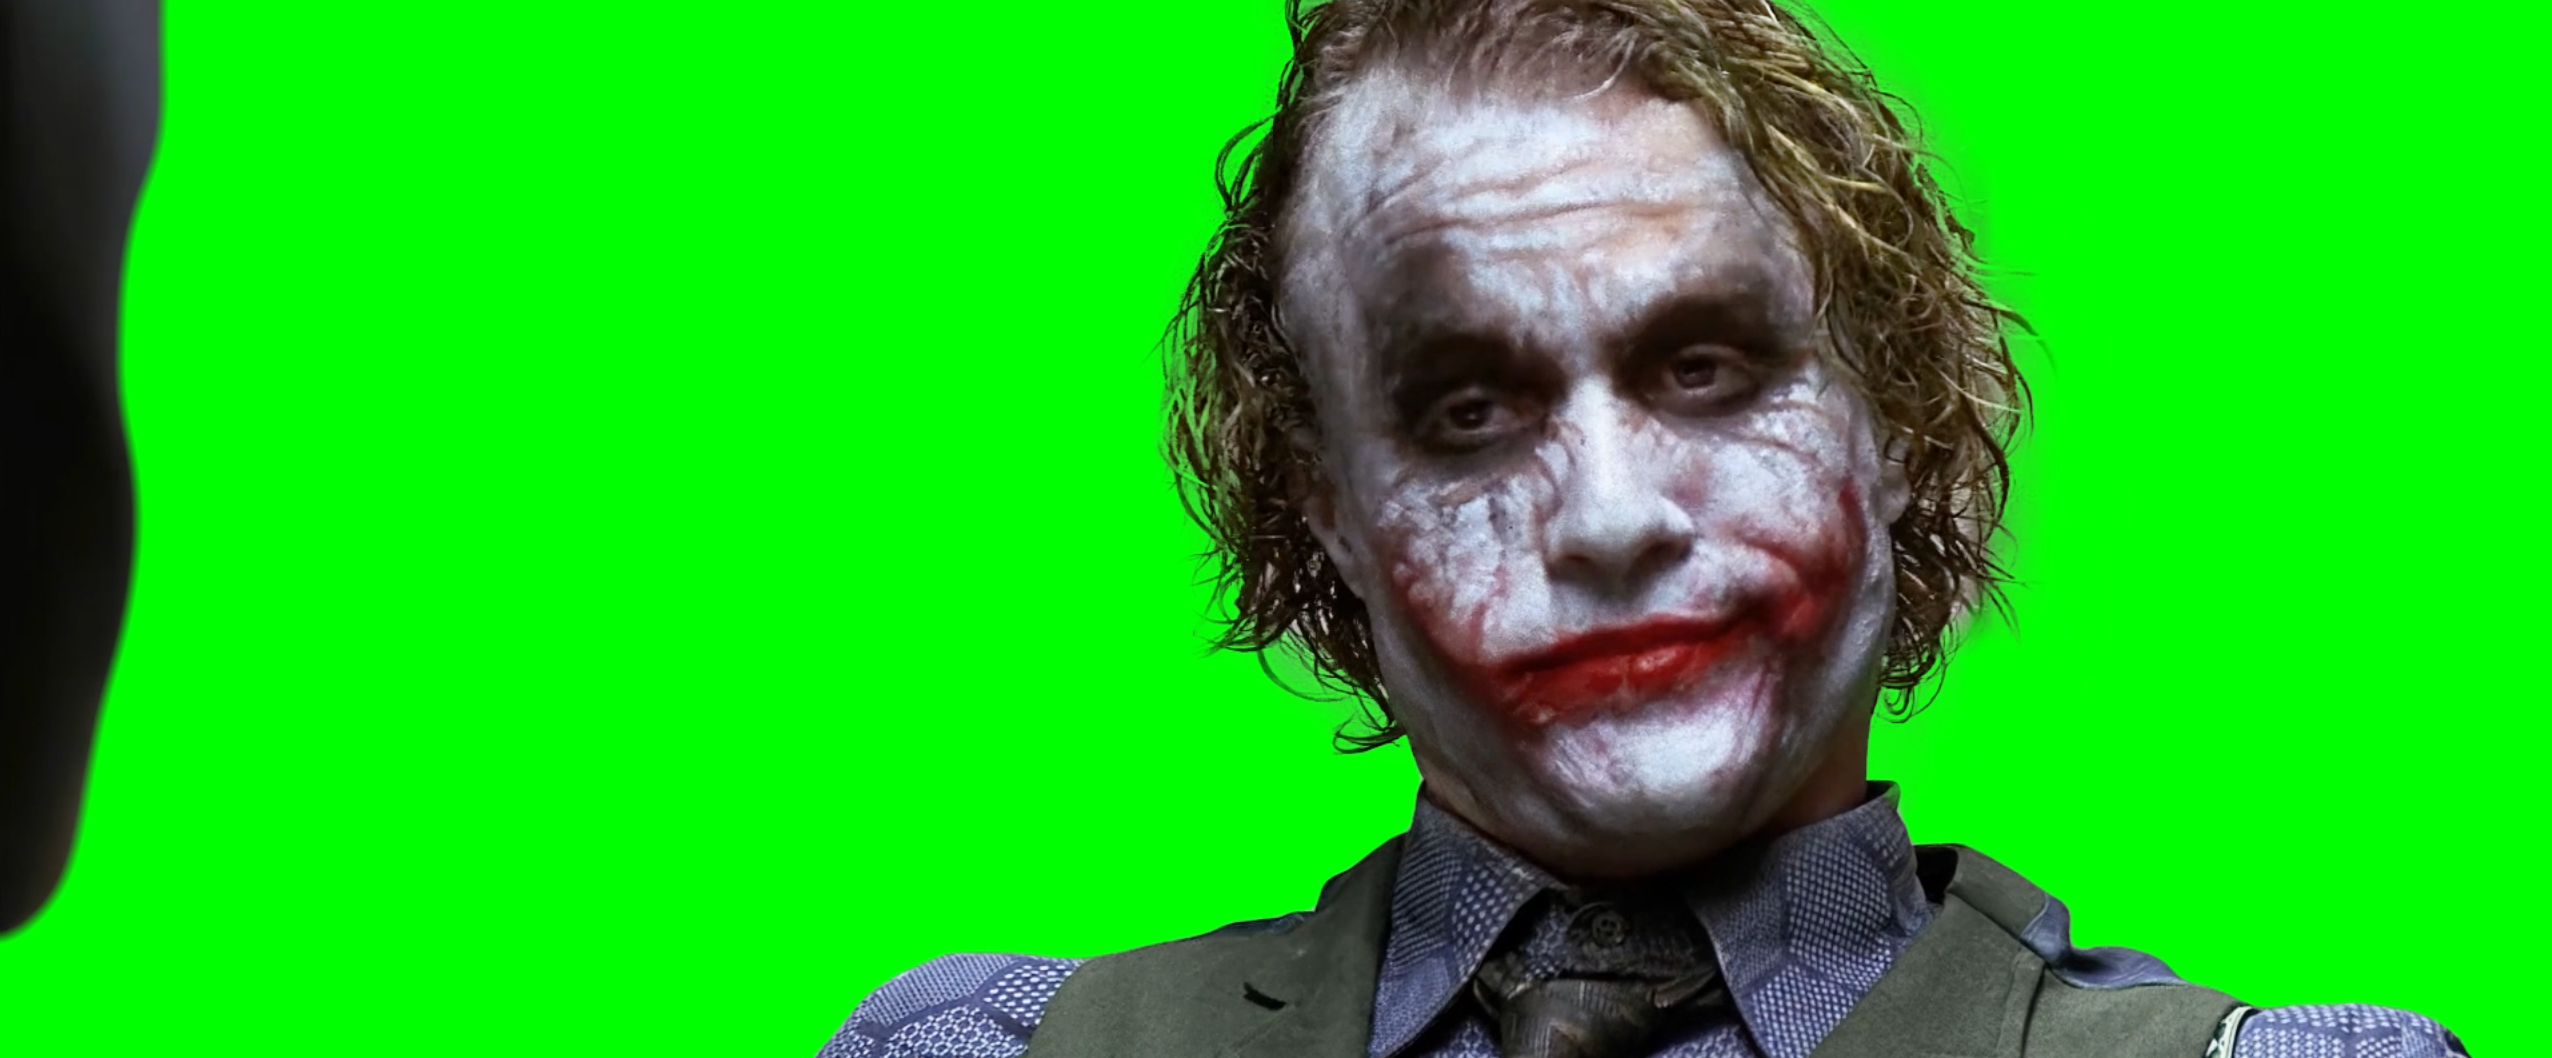 Joker saying 